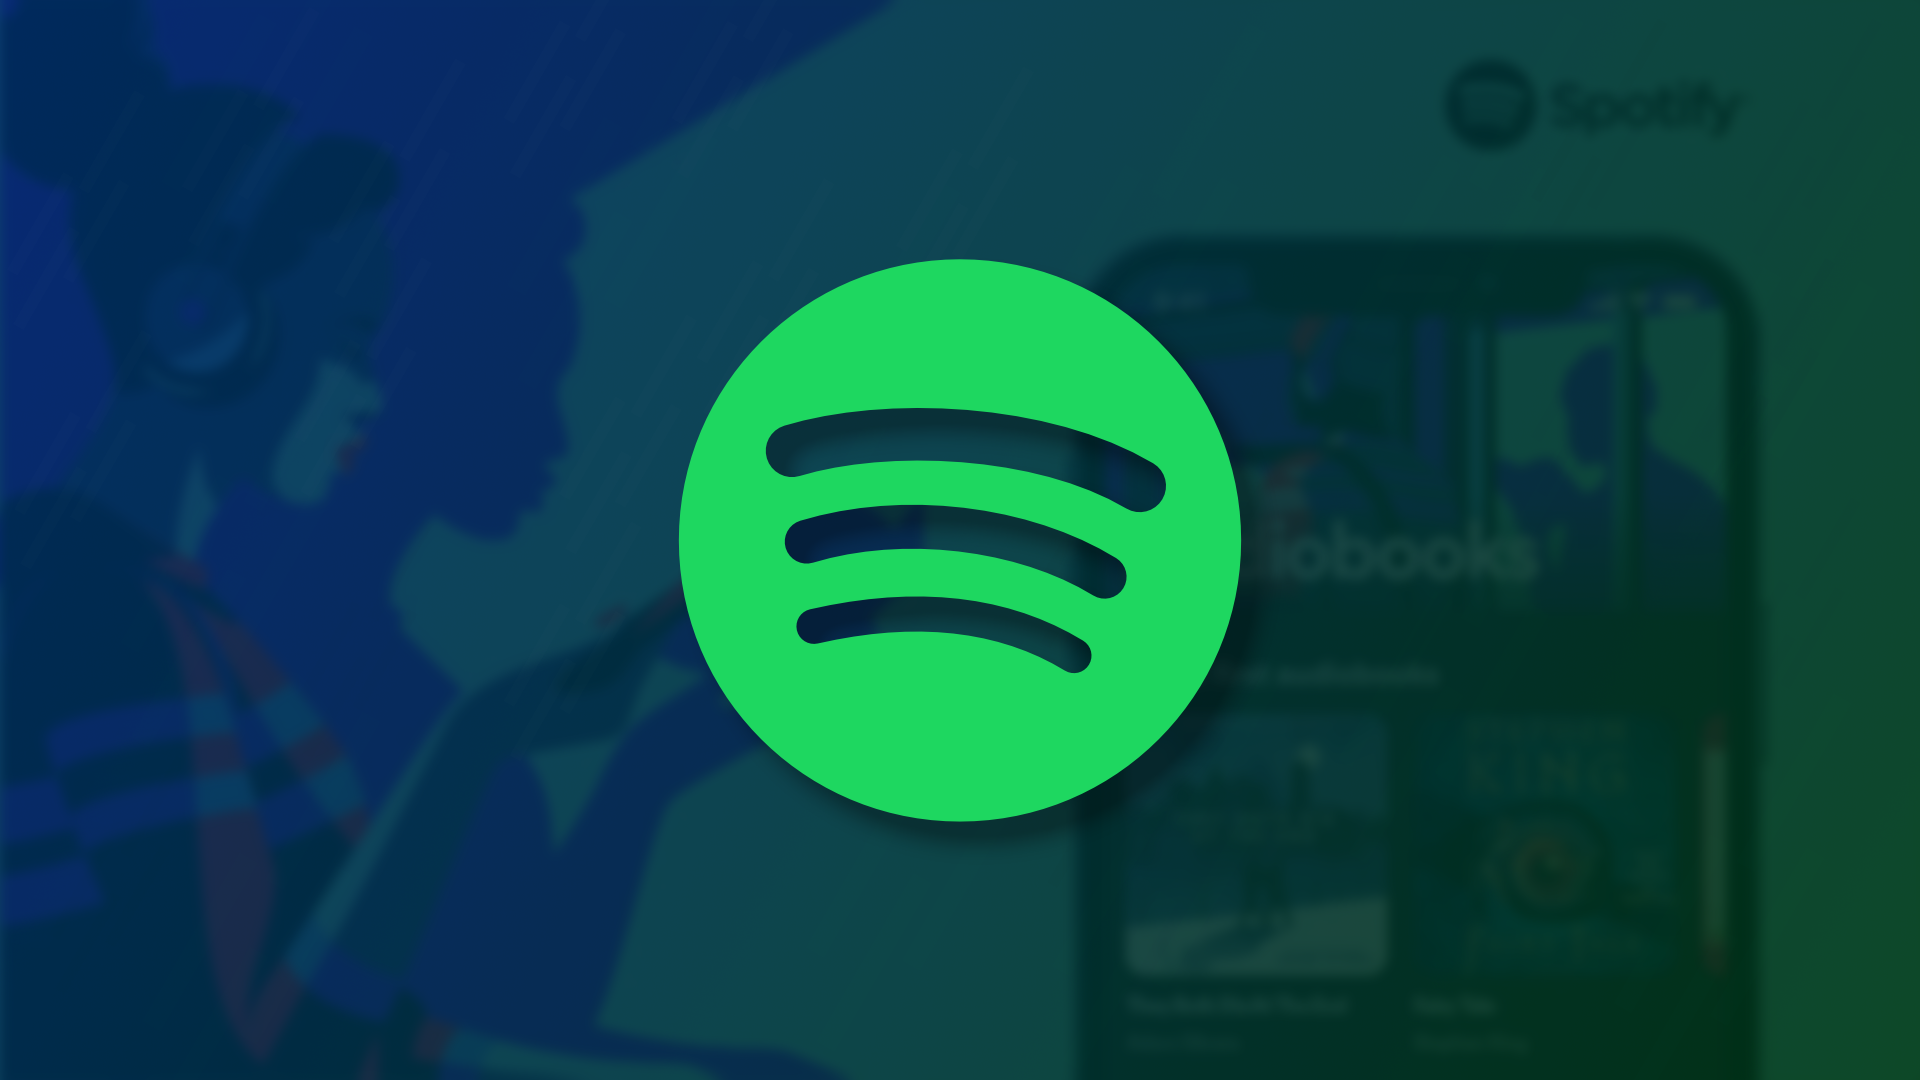 Rei dos áudios; Spotify passa a vender audiobooks em sua plataforma